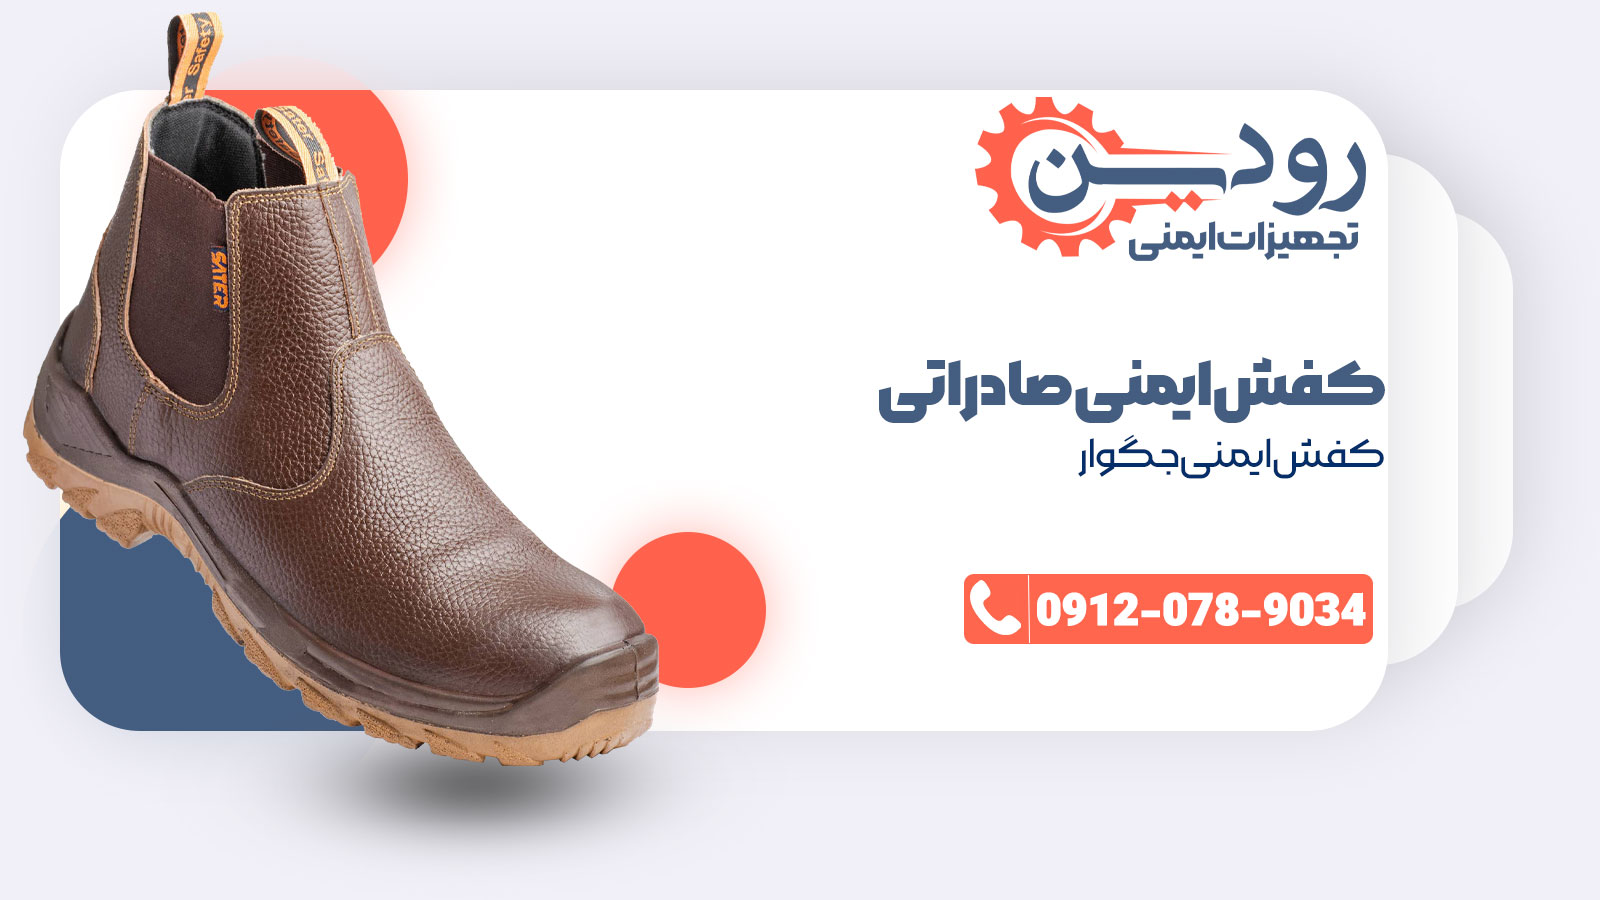 شرکت فروش کفش ایمنی صادراتی ویژگی کامل کفش ایمنی را به شما ارائه خواهد داد.